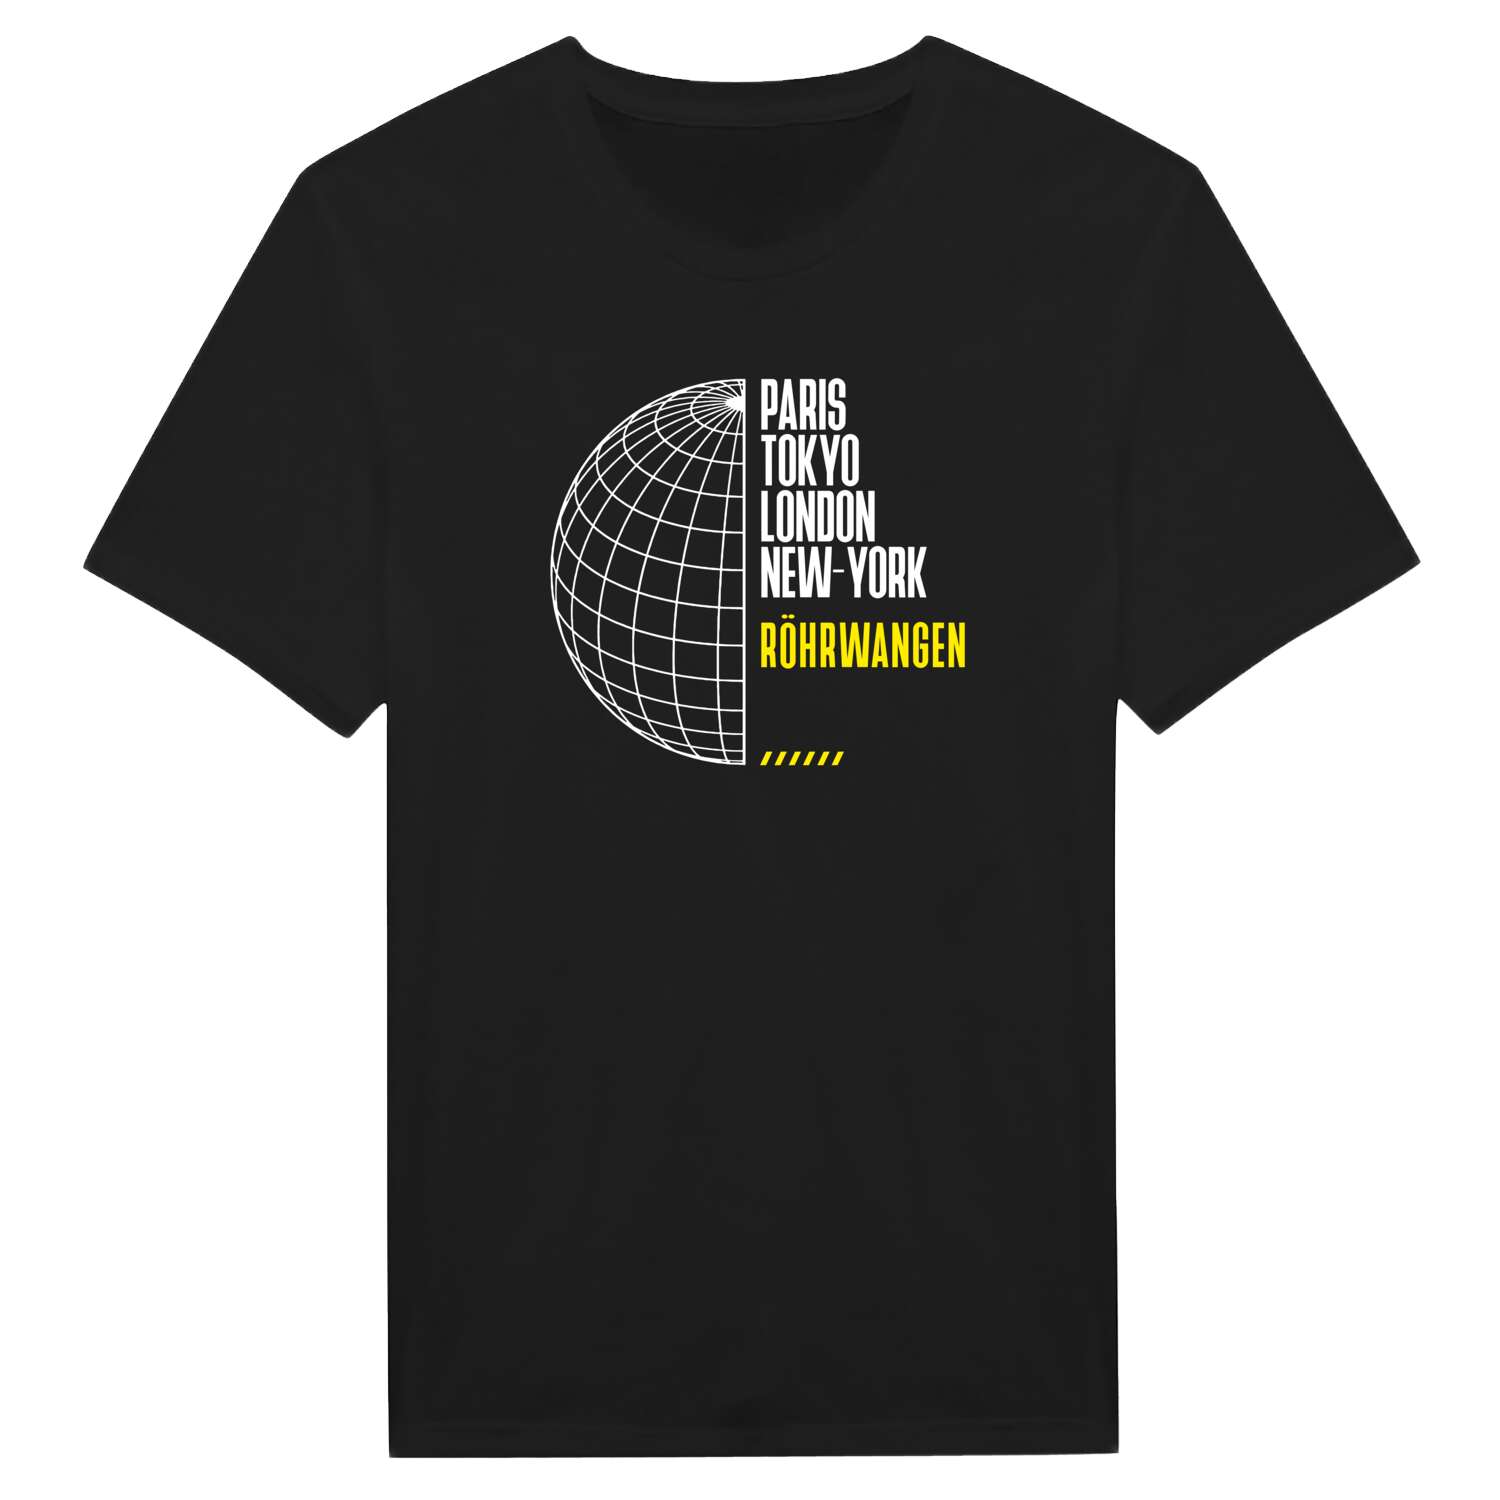 Röhrwangen T-Shirt »Paris Tokyo London«